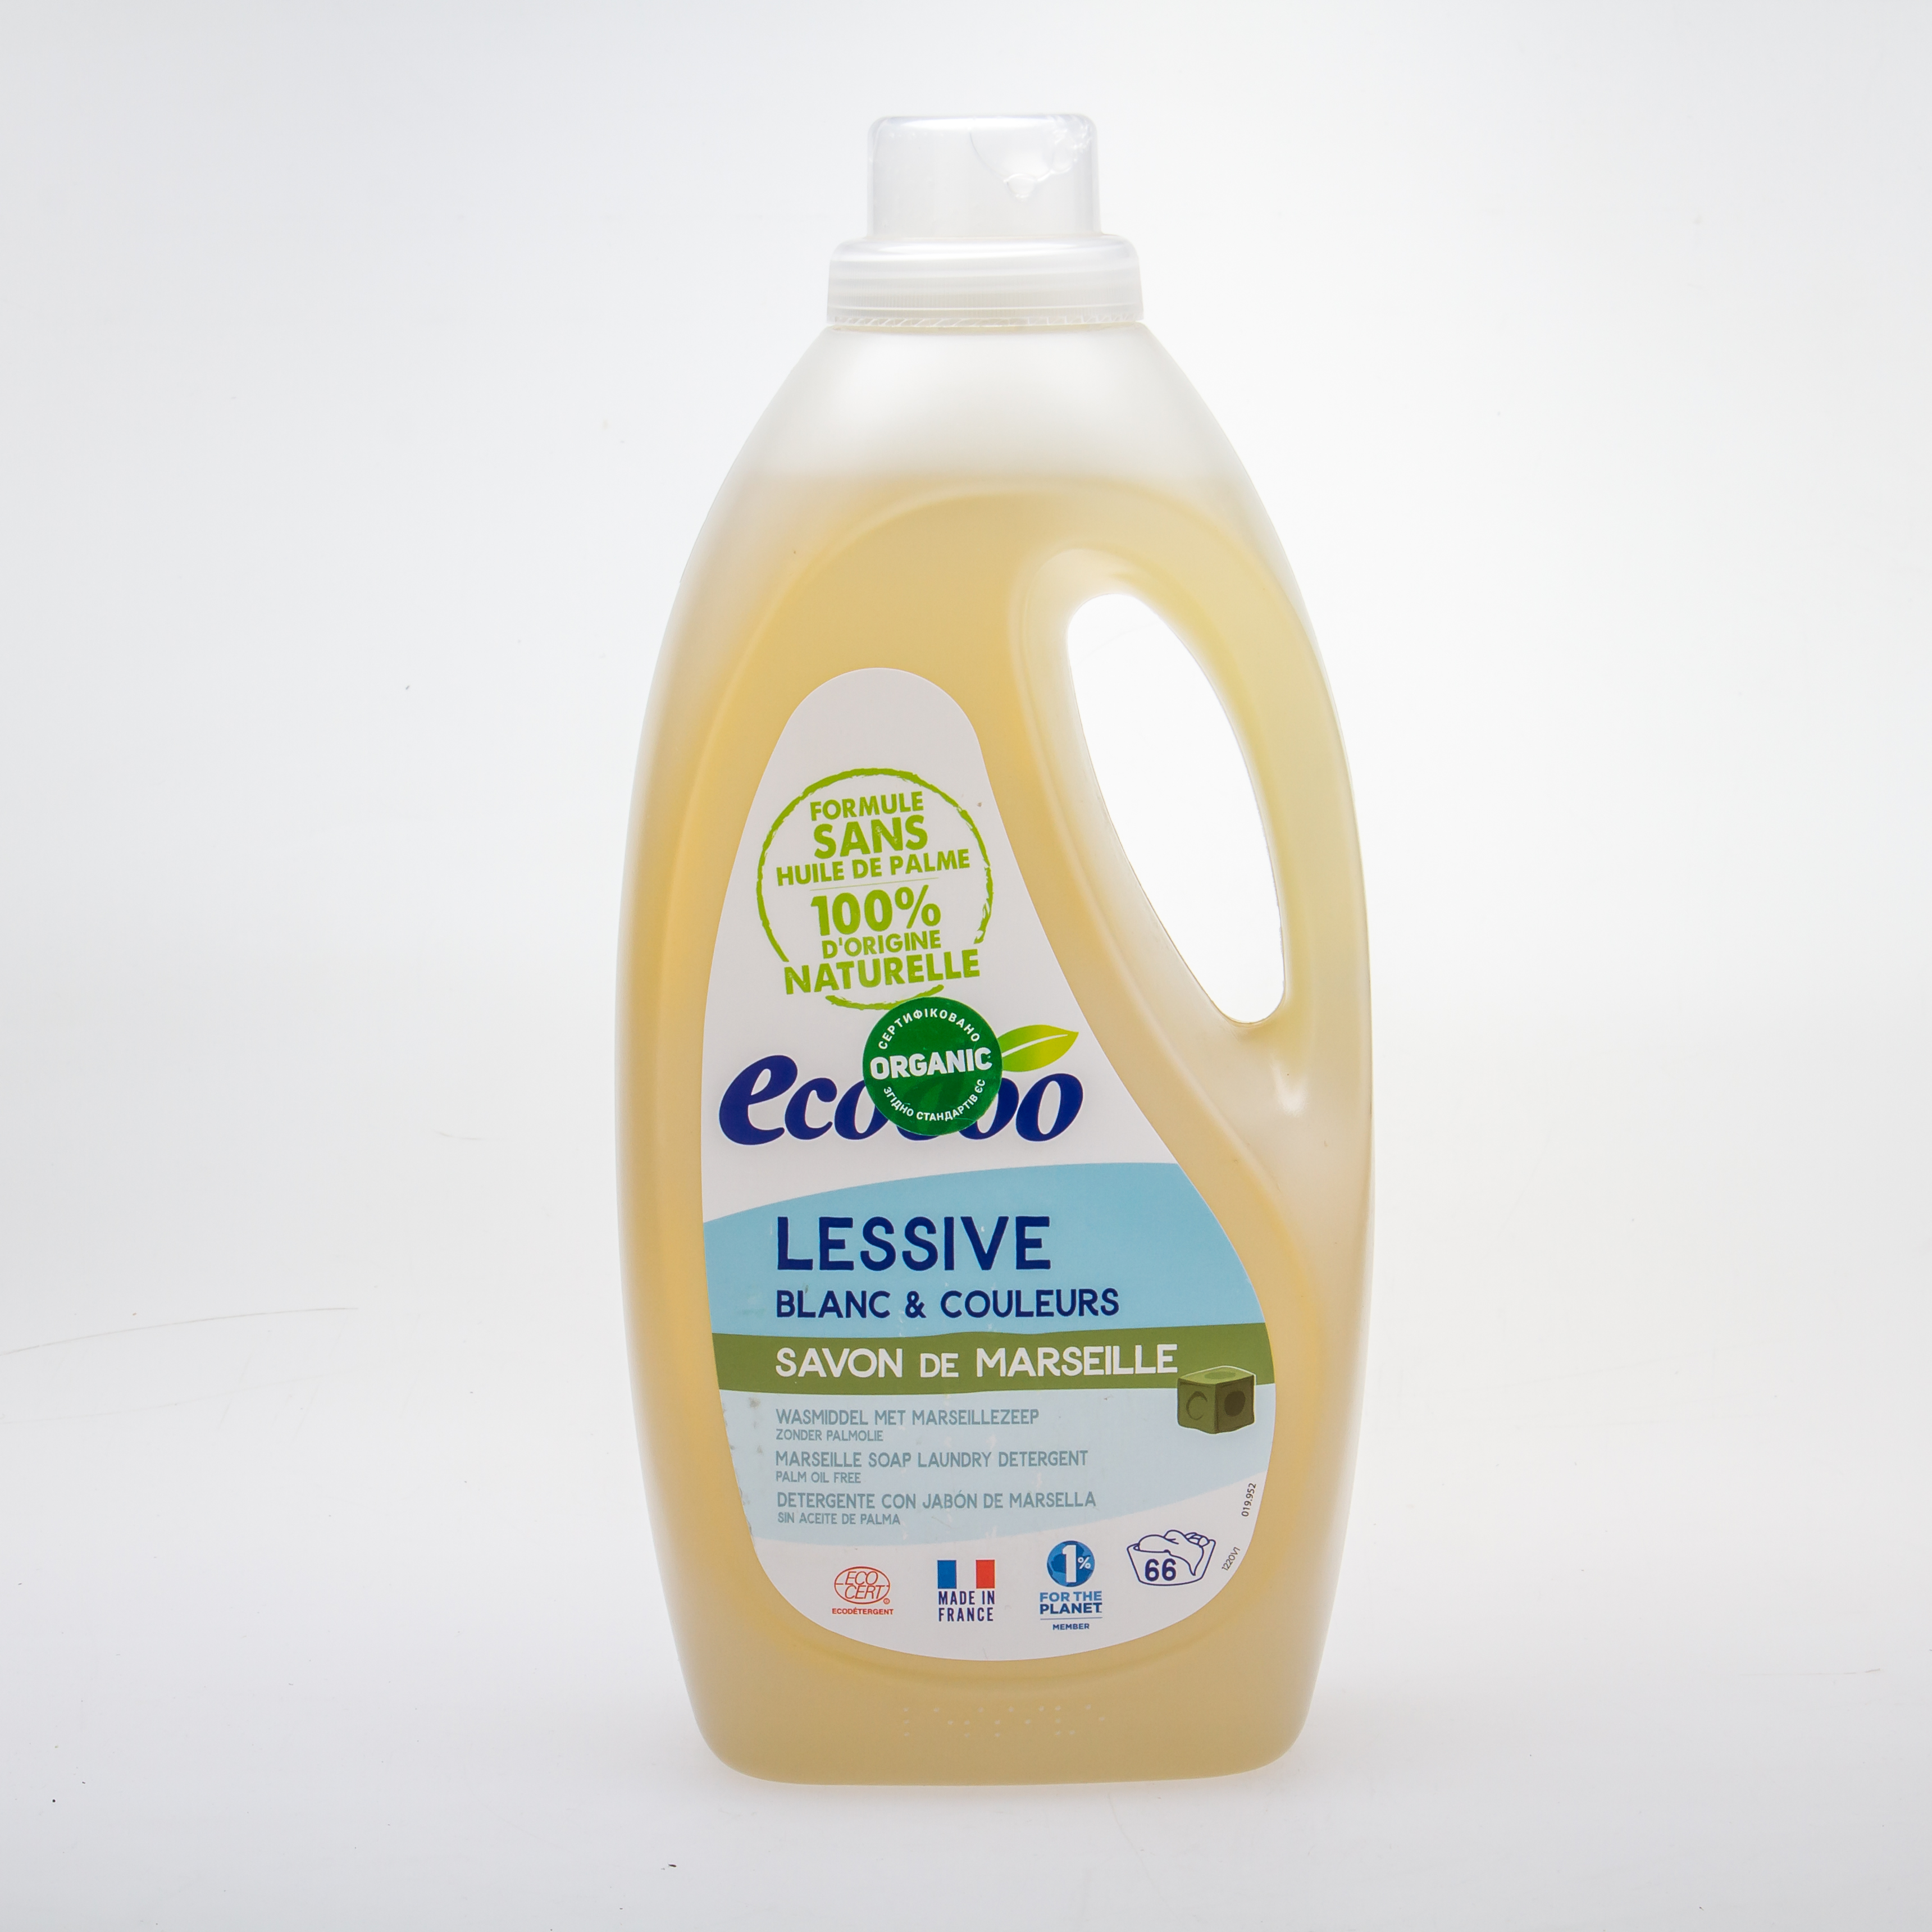 Ecodoo Органічний рідкий пральний засіб «Марсельське мило» 2L - купить в интернет-магазине Юнимед